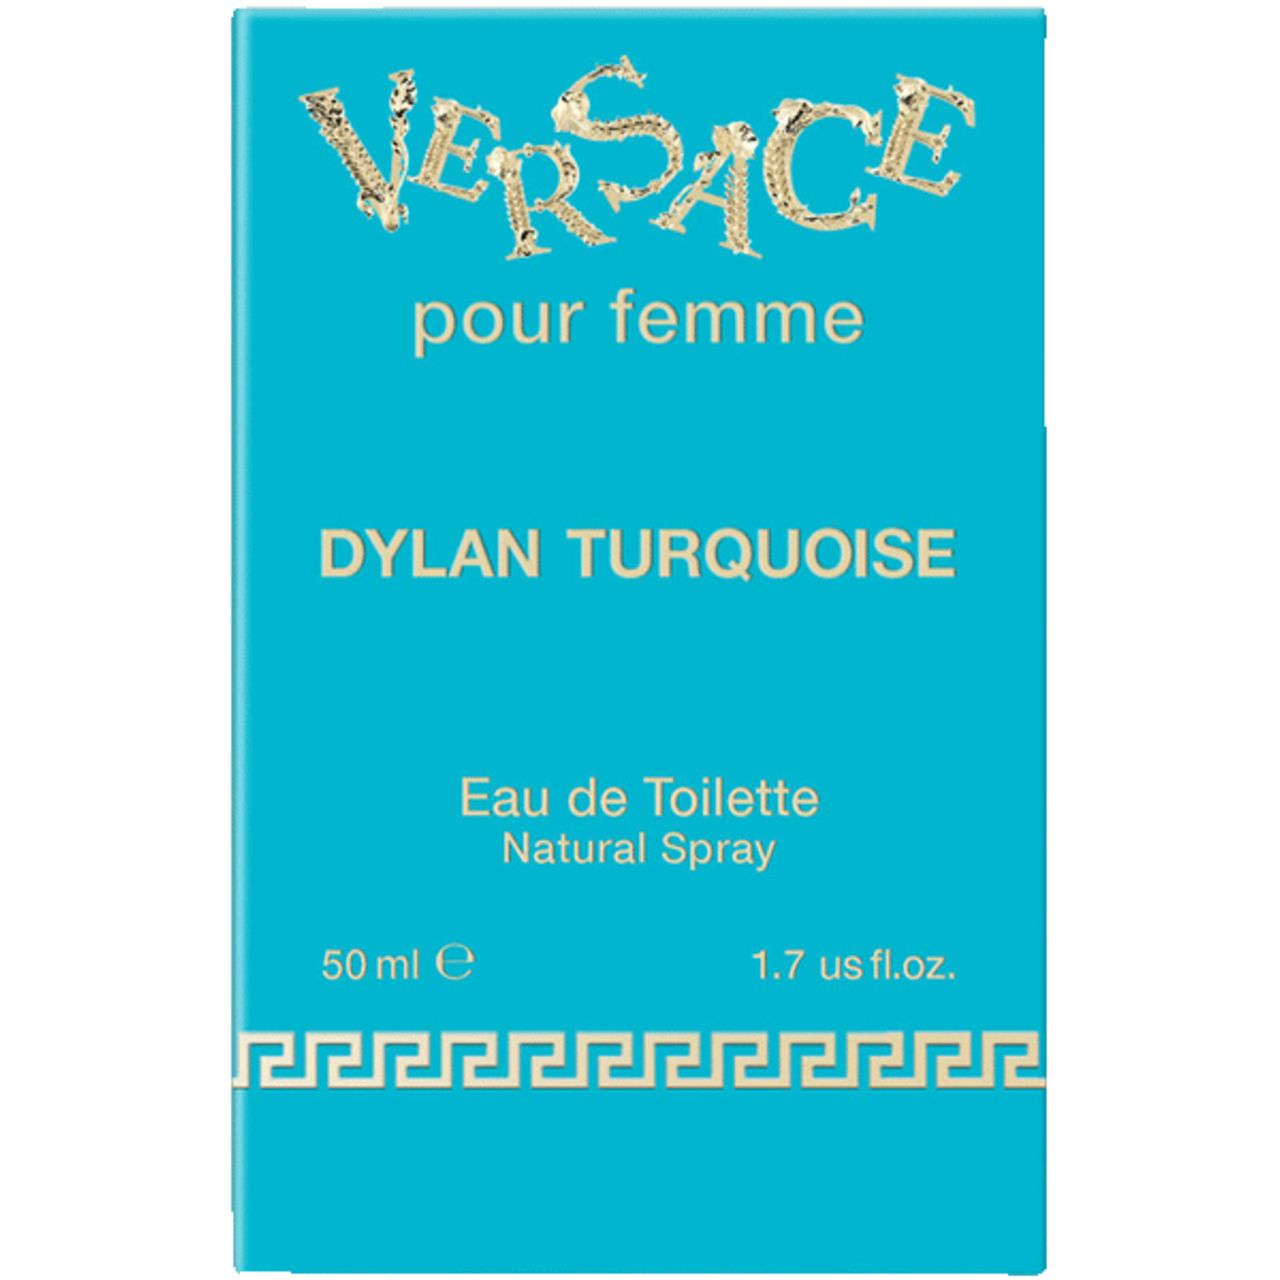 Dylan Turquoise pour femme Eau de Toilette 50 ml